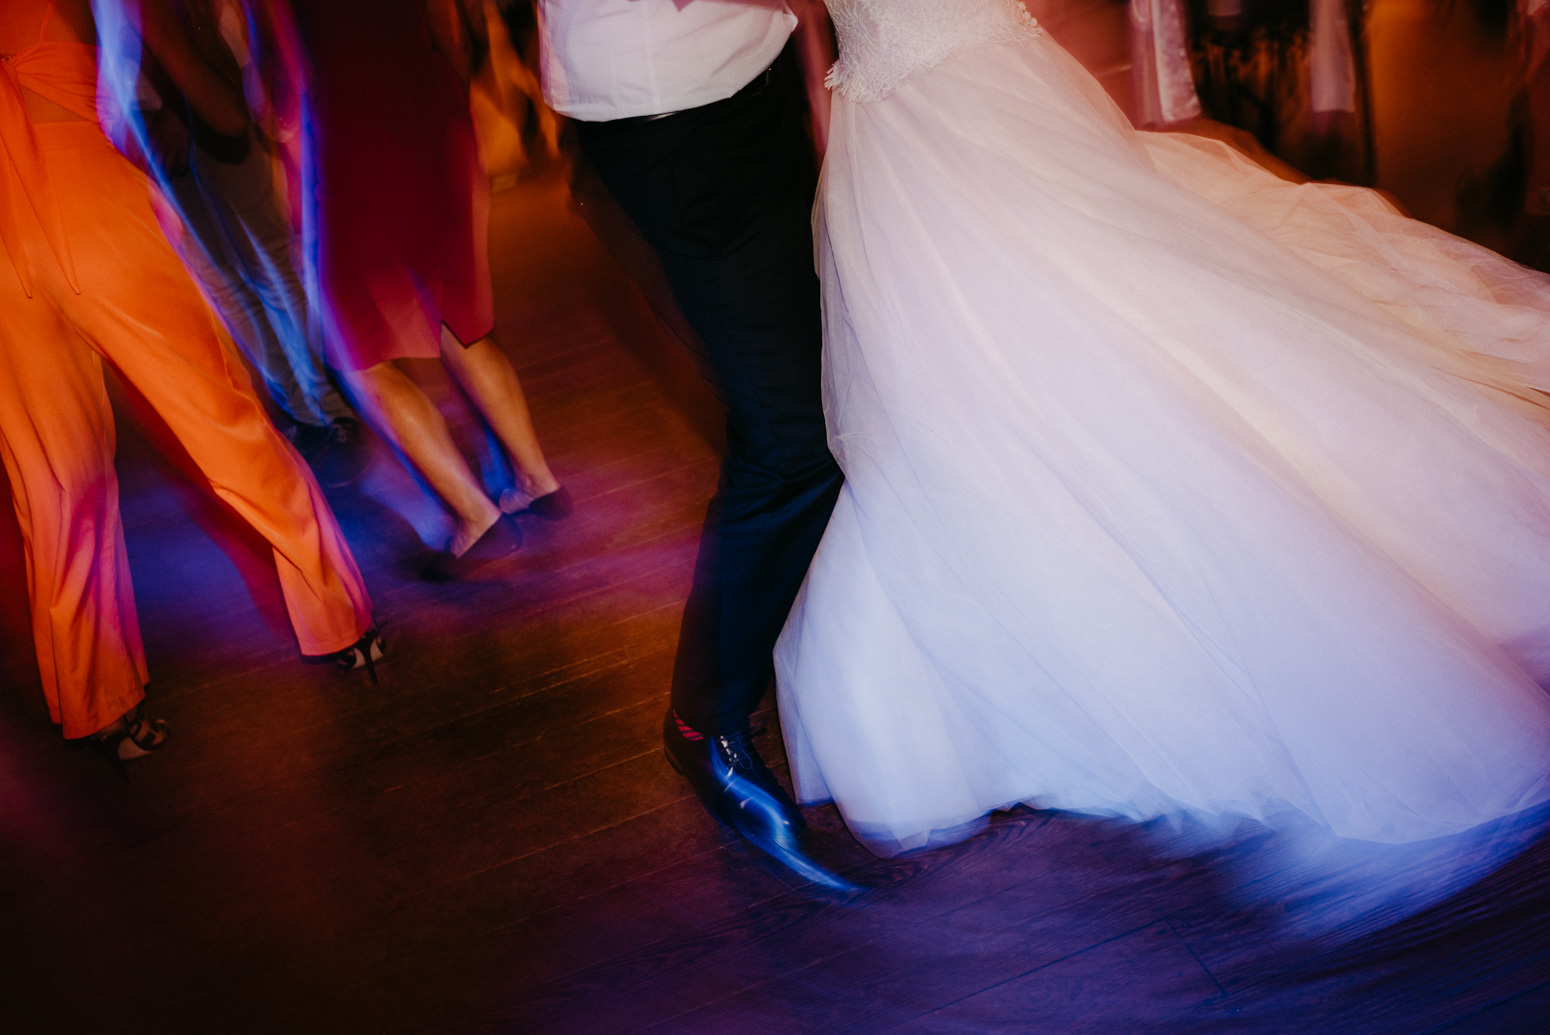 Hochzeitsparty und tanzende Gäste einer Hochzeitsfeier in der kleinen Beethovenhalle, Bad Godesberg. Hochzeitsfotograf Köln Bonn, Daria Becker von Genuine Bonds, NRW